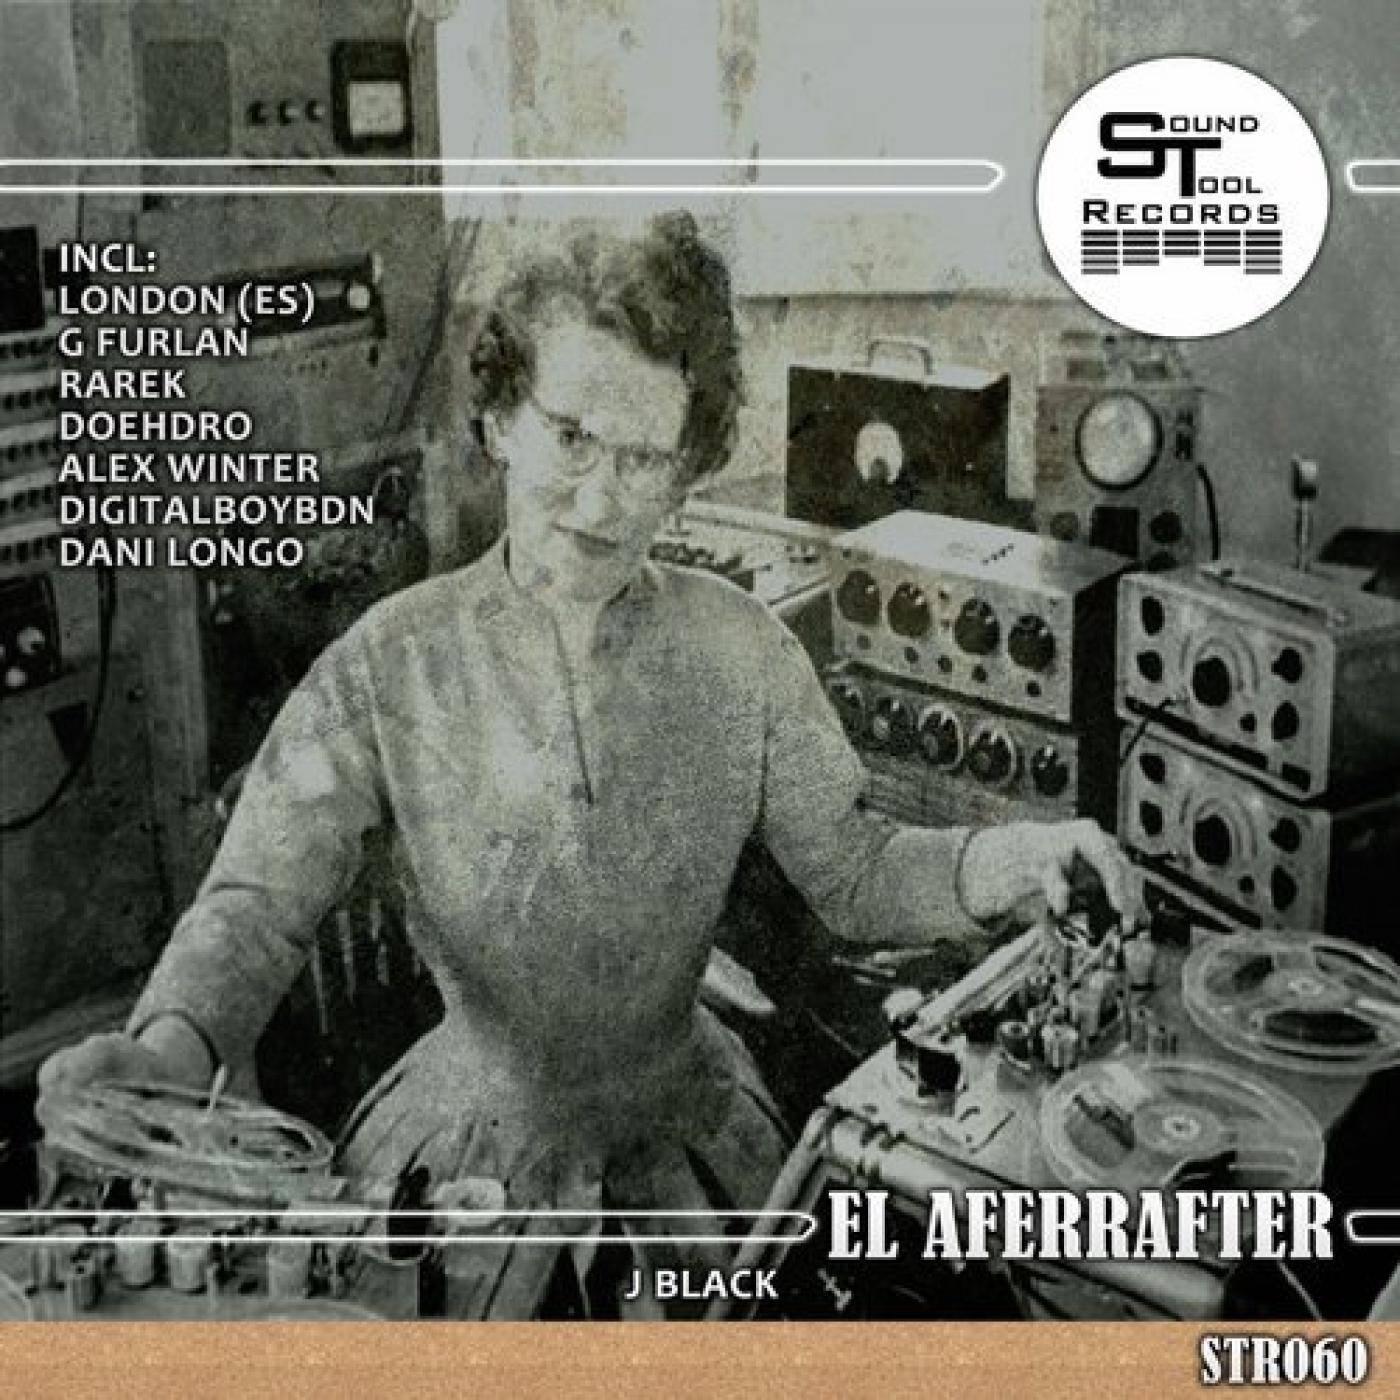 El Aferrafter (Private Club Version)